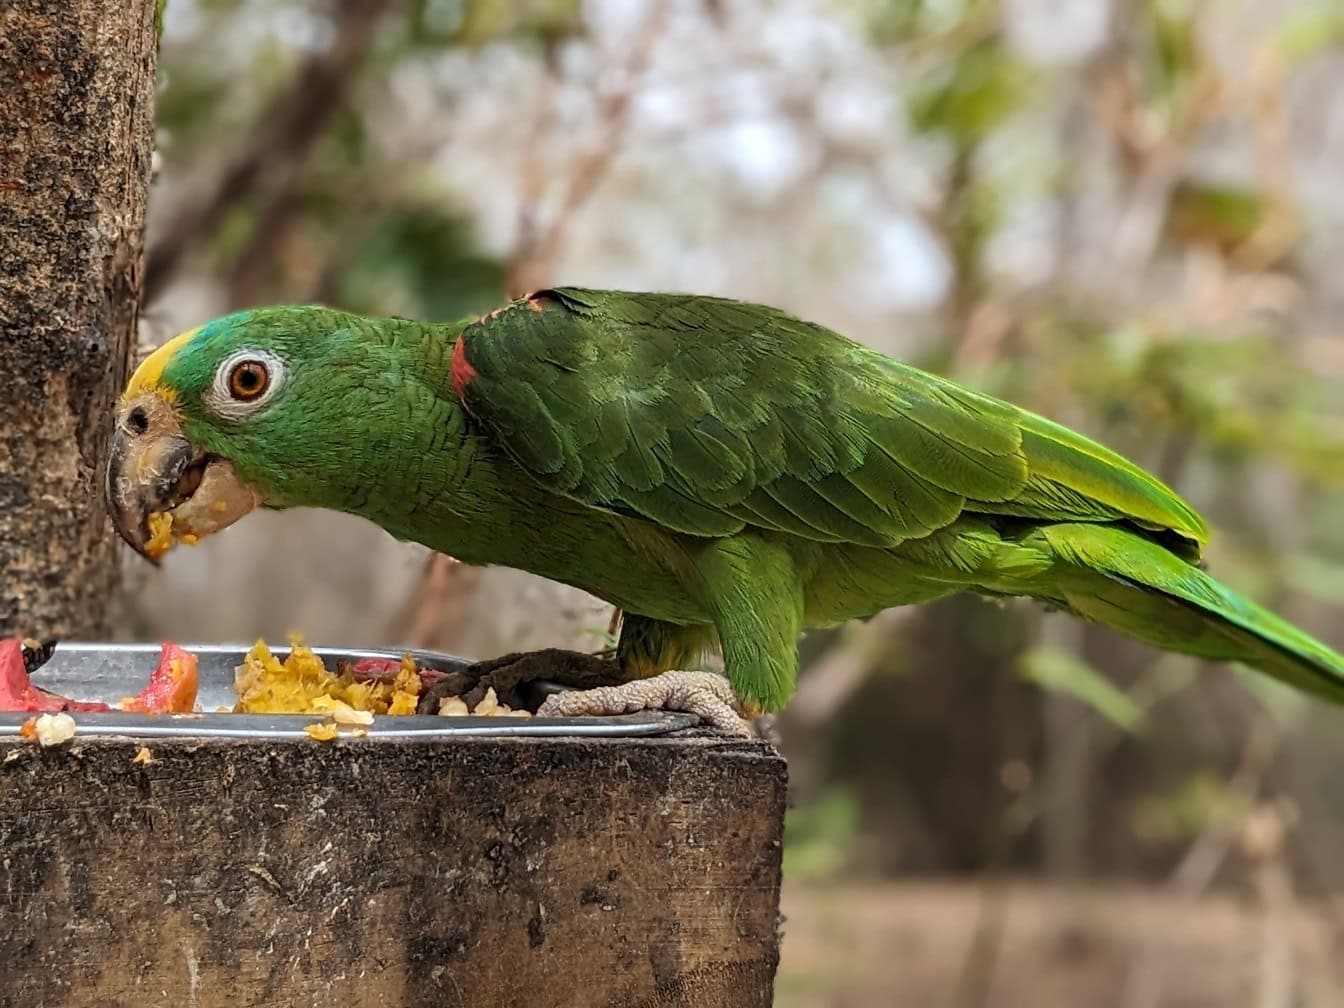 파나마 노란 머리 아마존 새로도 알려진 파나마 아마존 앵무새 (Amazona ochrocephala panamensis) 음식을 먹는 녹색 앵무새